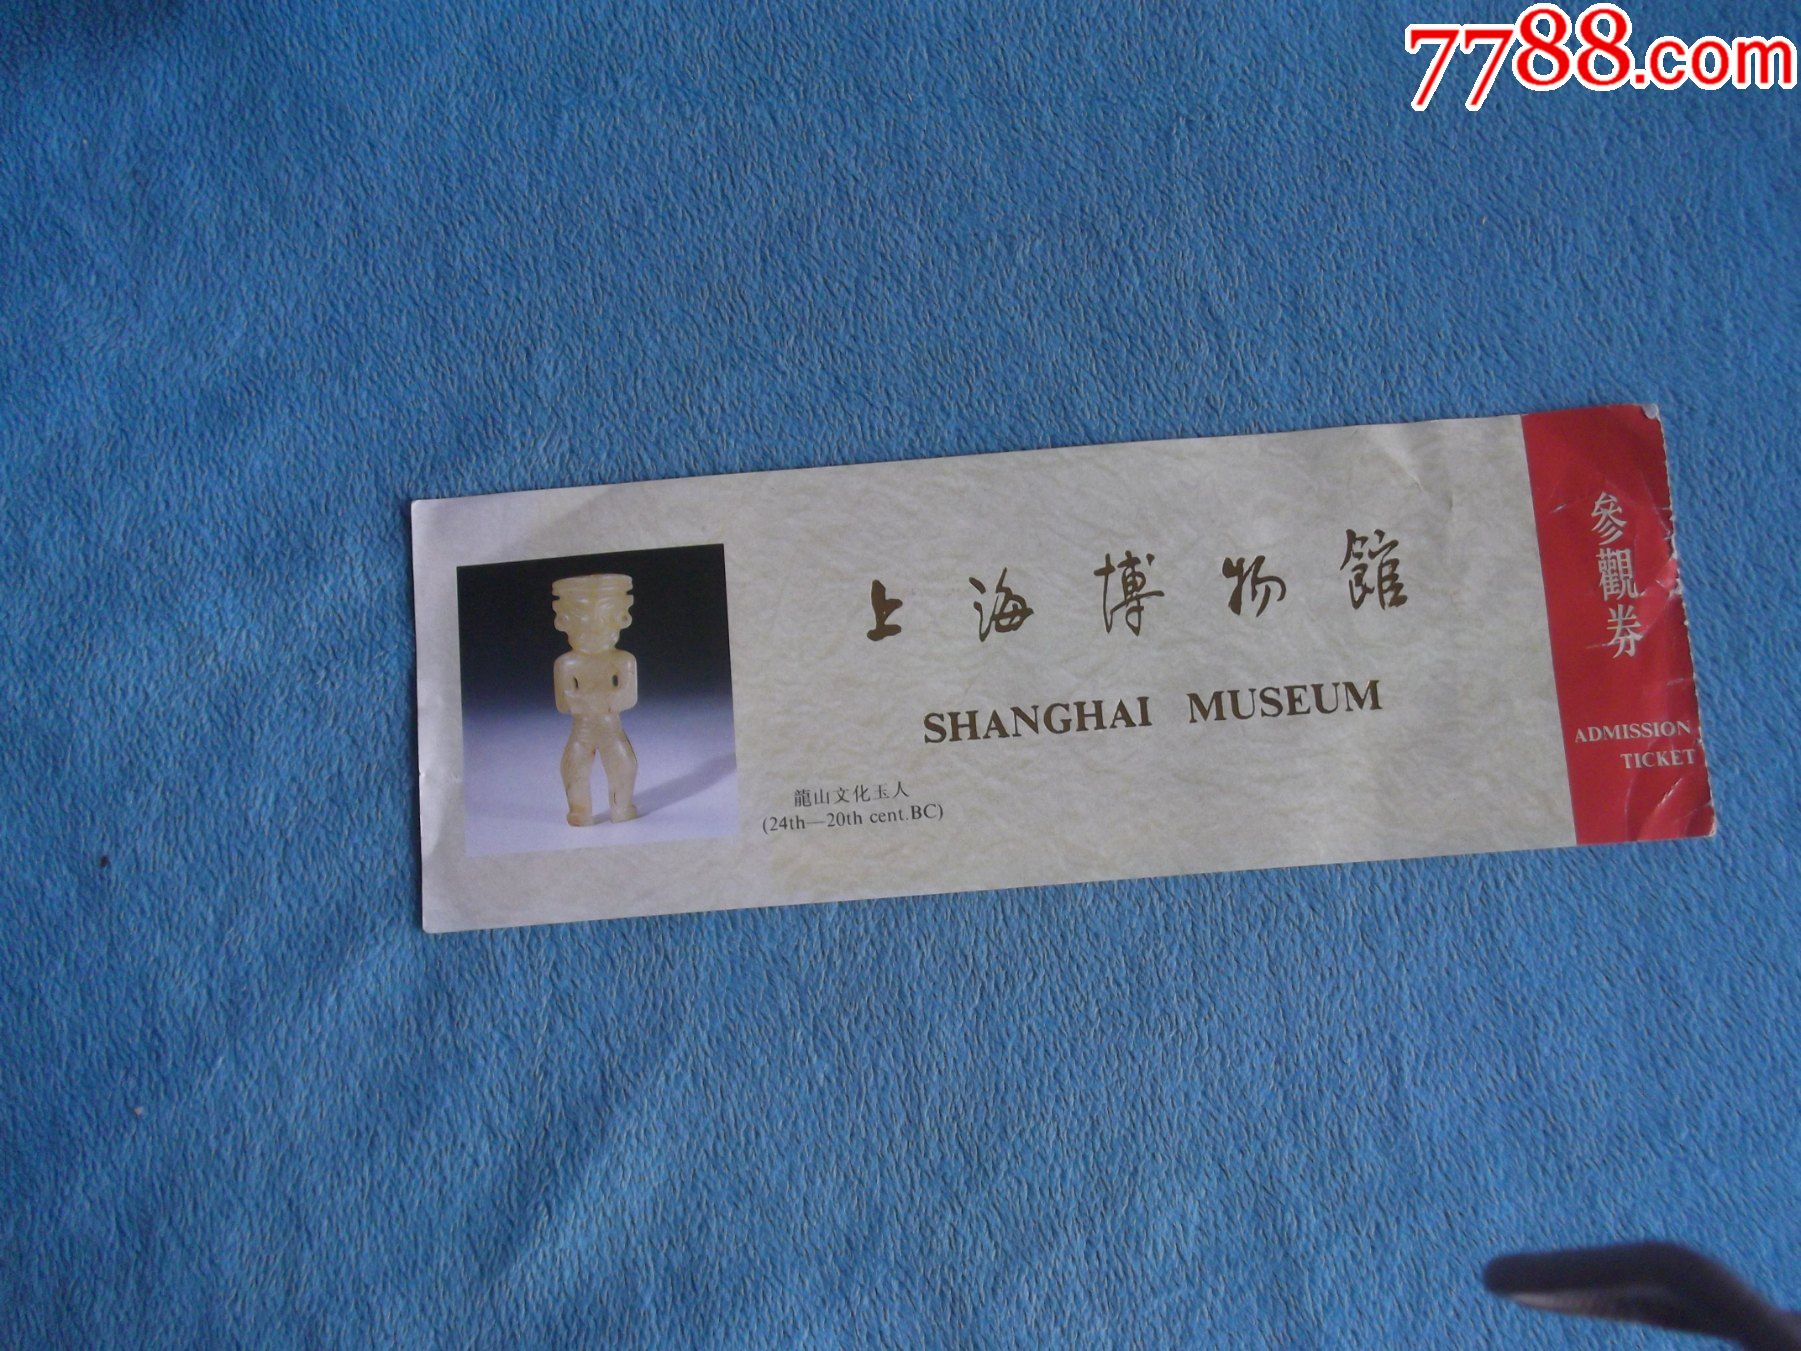 上海博物馆参观券门票